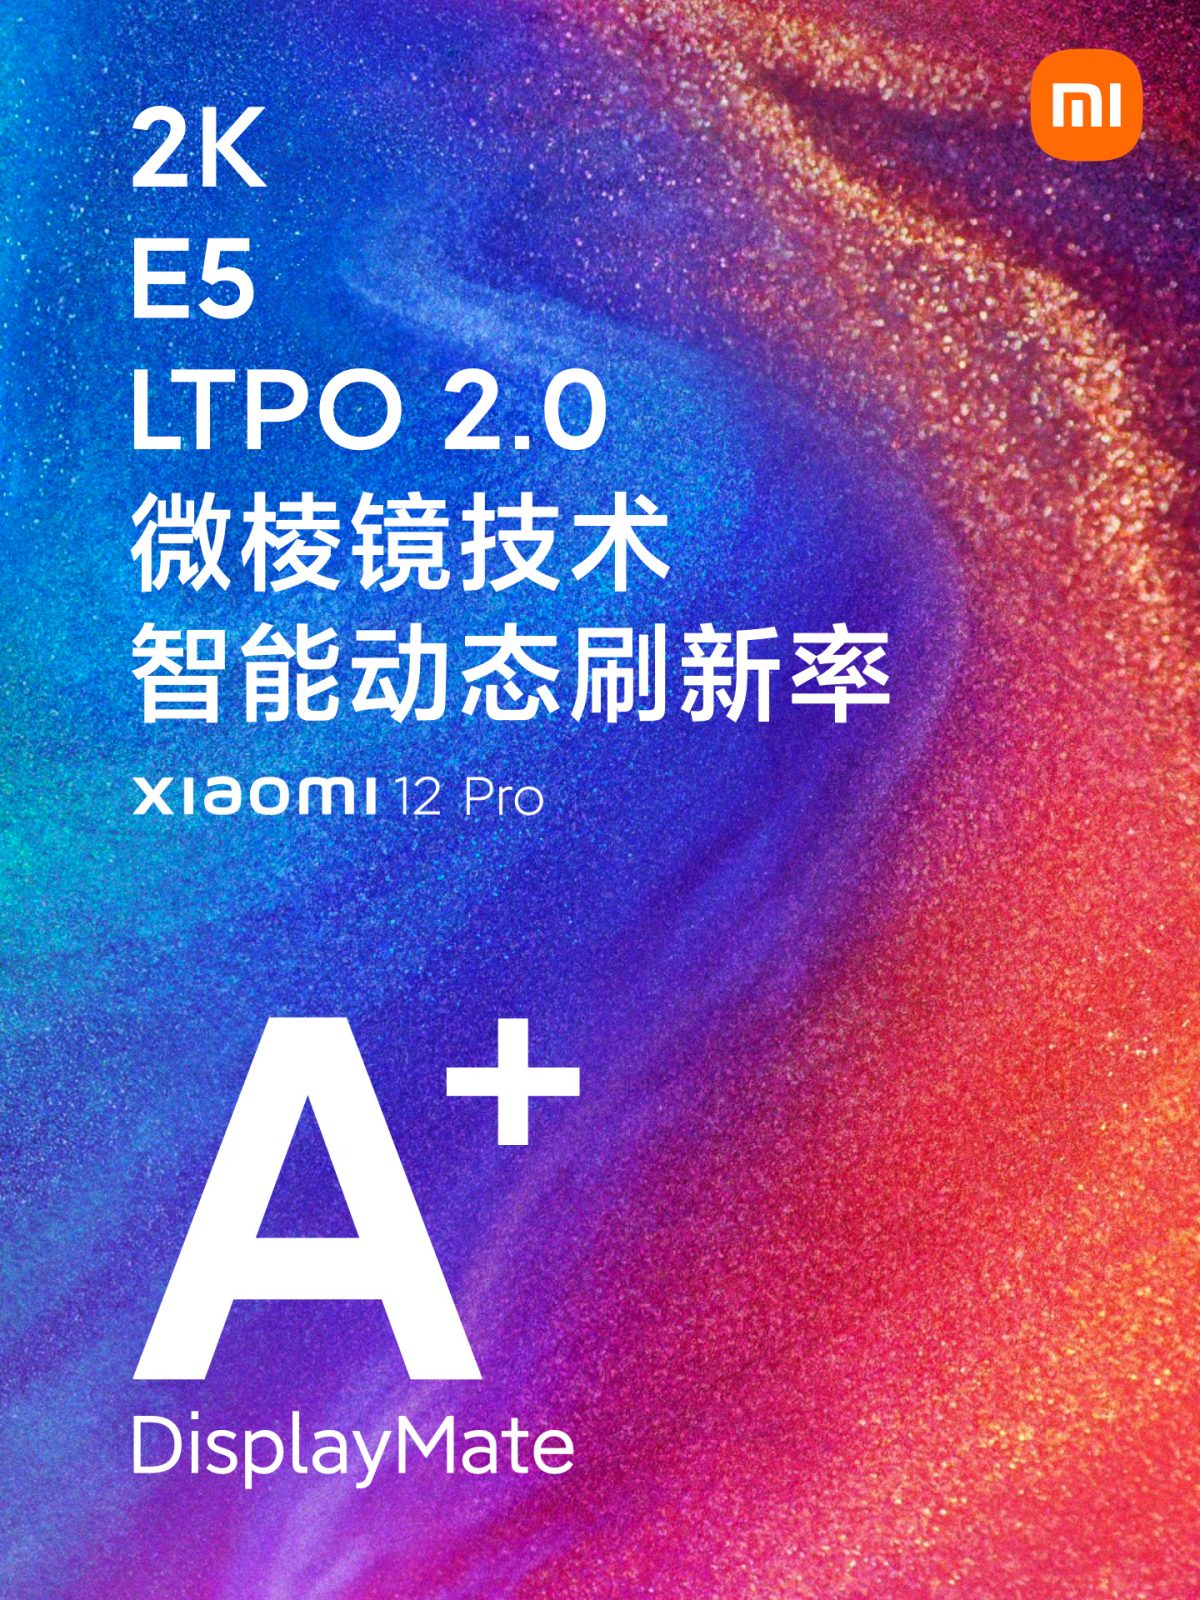 premiera Xiaomi 12 Pro cena specyfikacja techniczna plotki przecieki